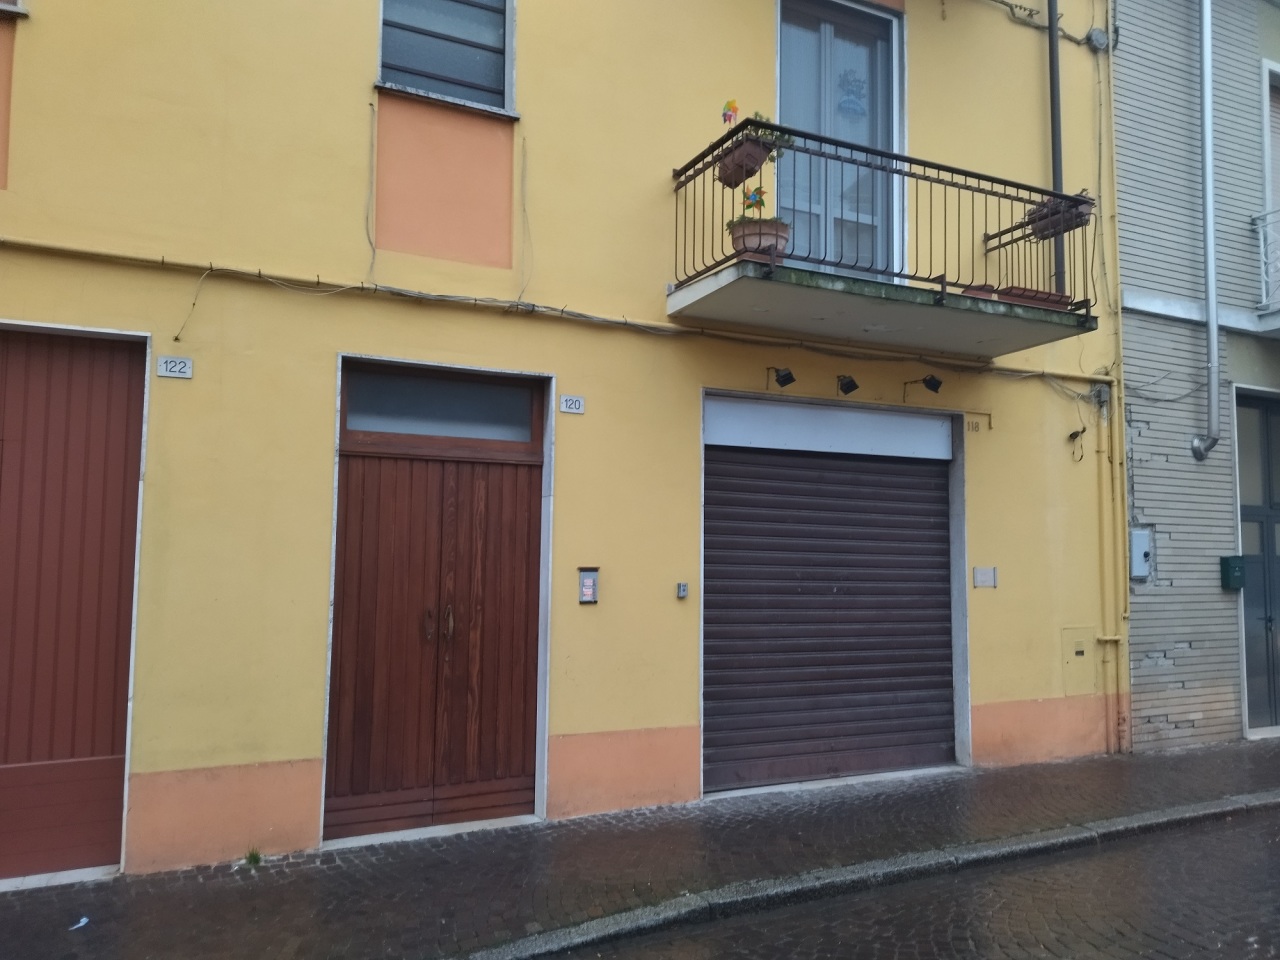 Attività / Licenza in affitto a Casalmaggiore, 2 locali, prezzo € 300 | PortaleAgenzieImmobiliari.it